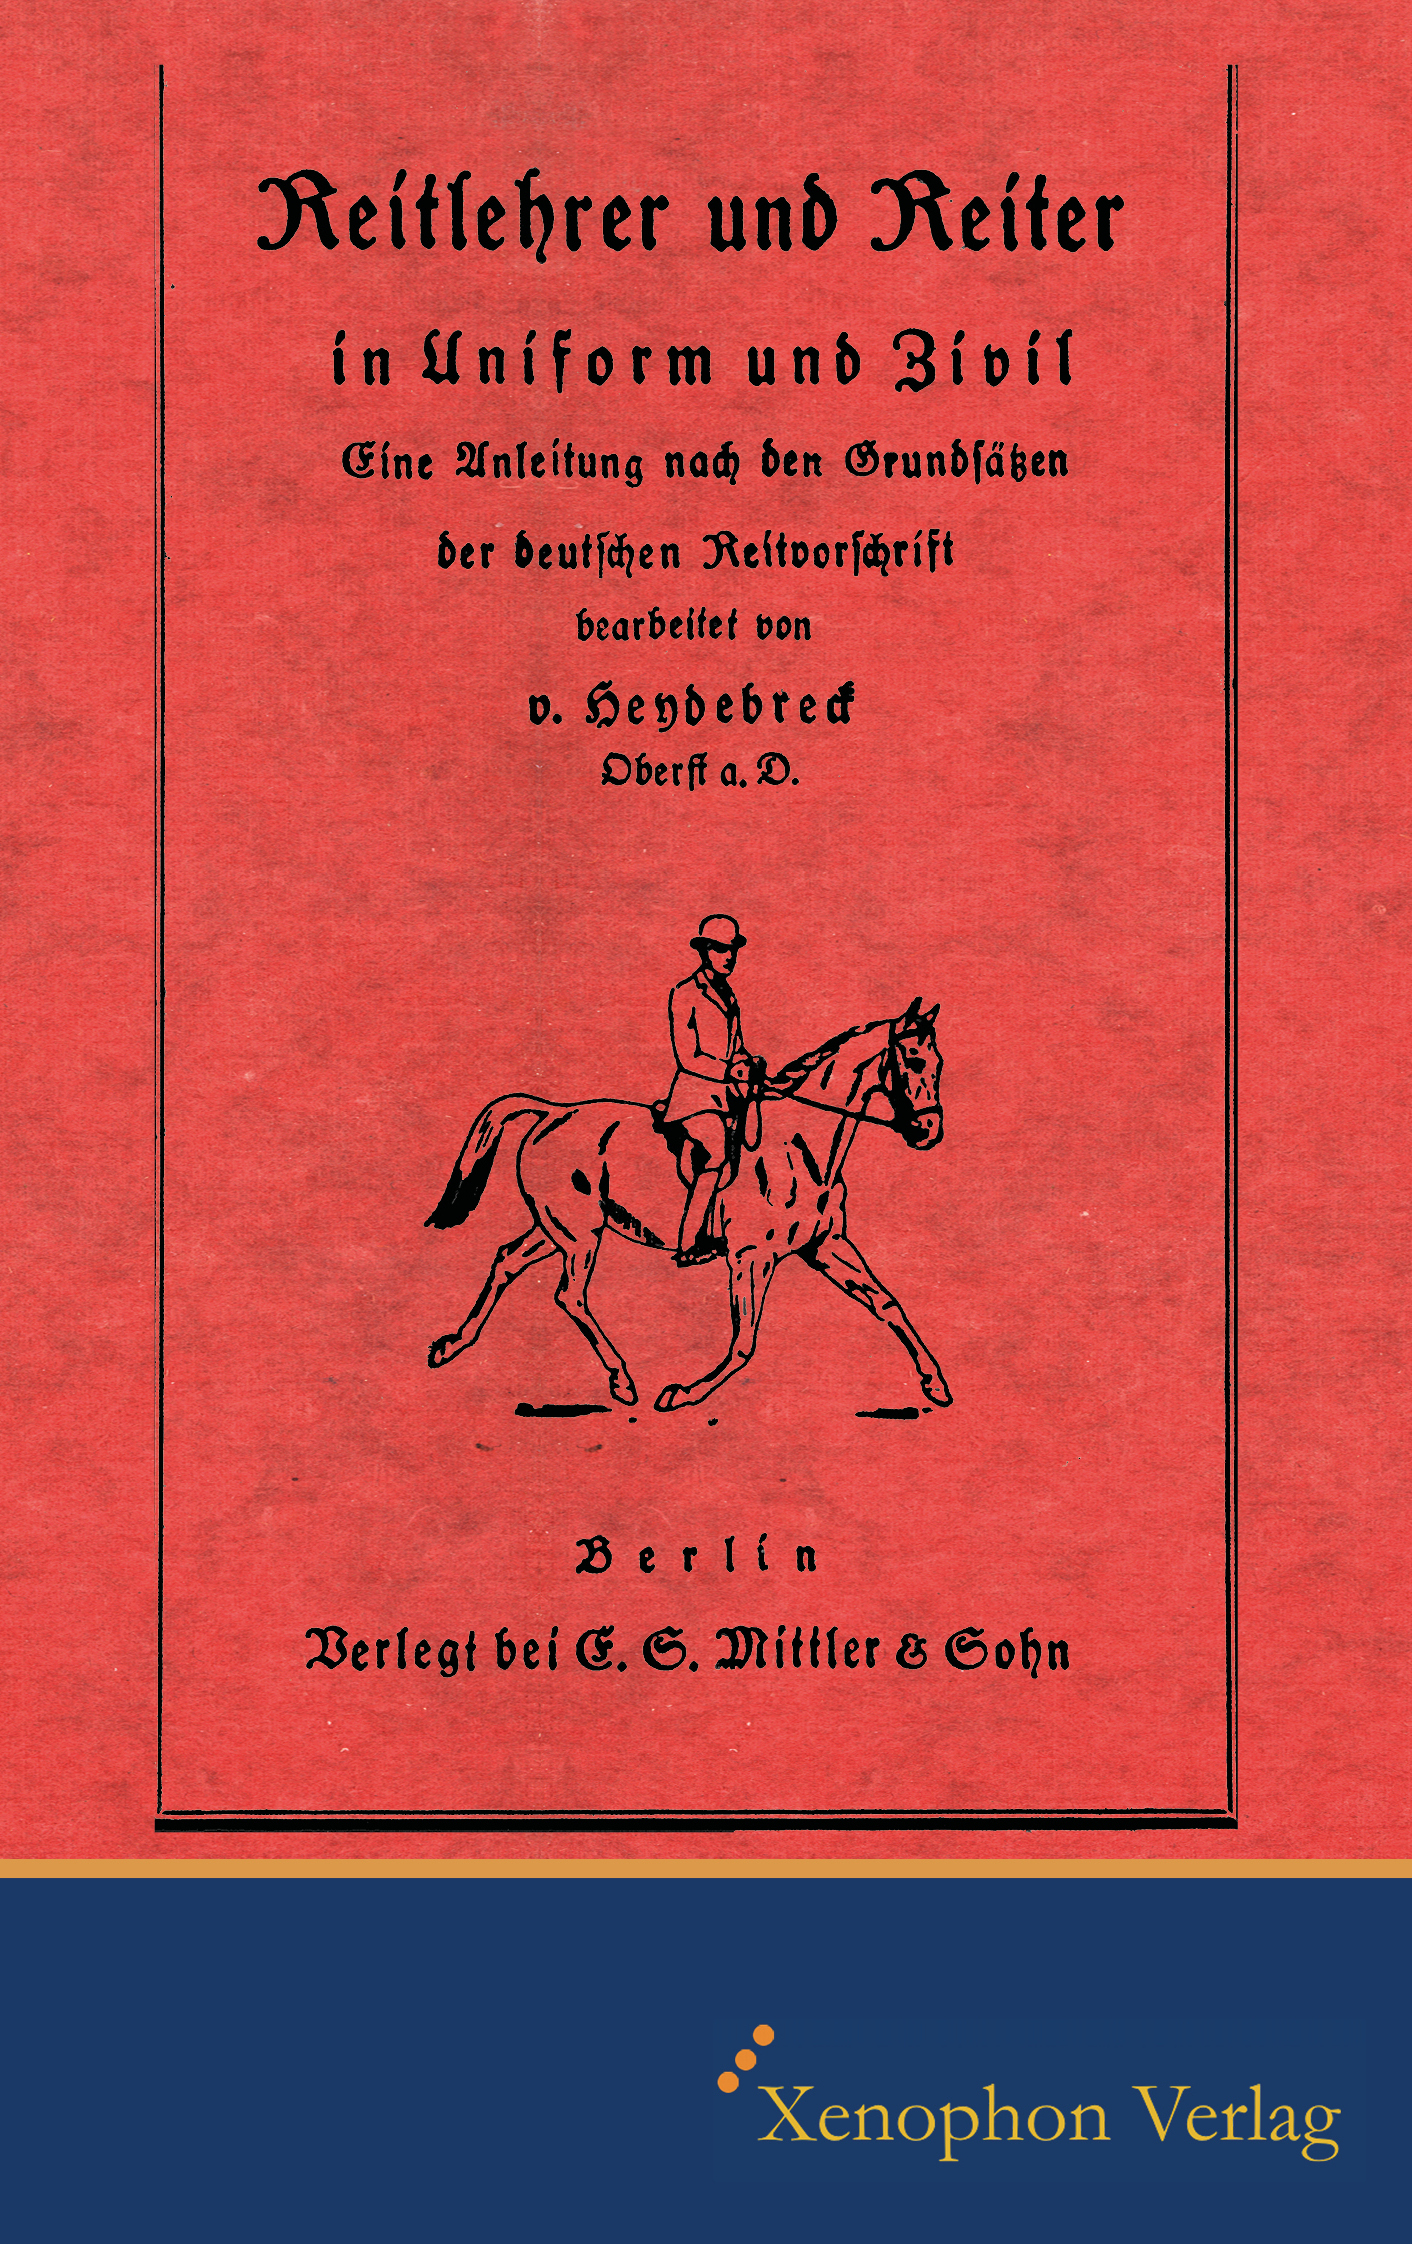 Reitlehrer und Reiter in Zivil und Uniform (Heydebreck)